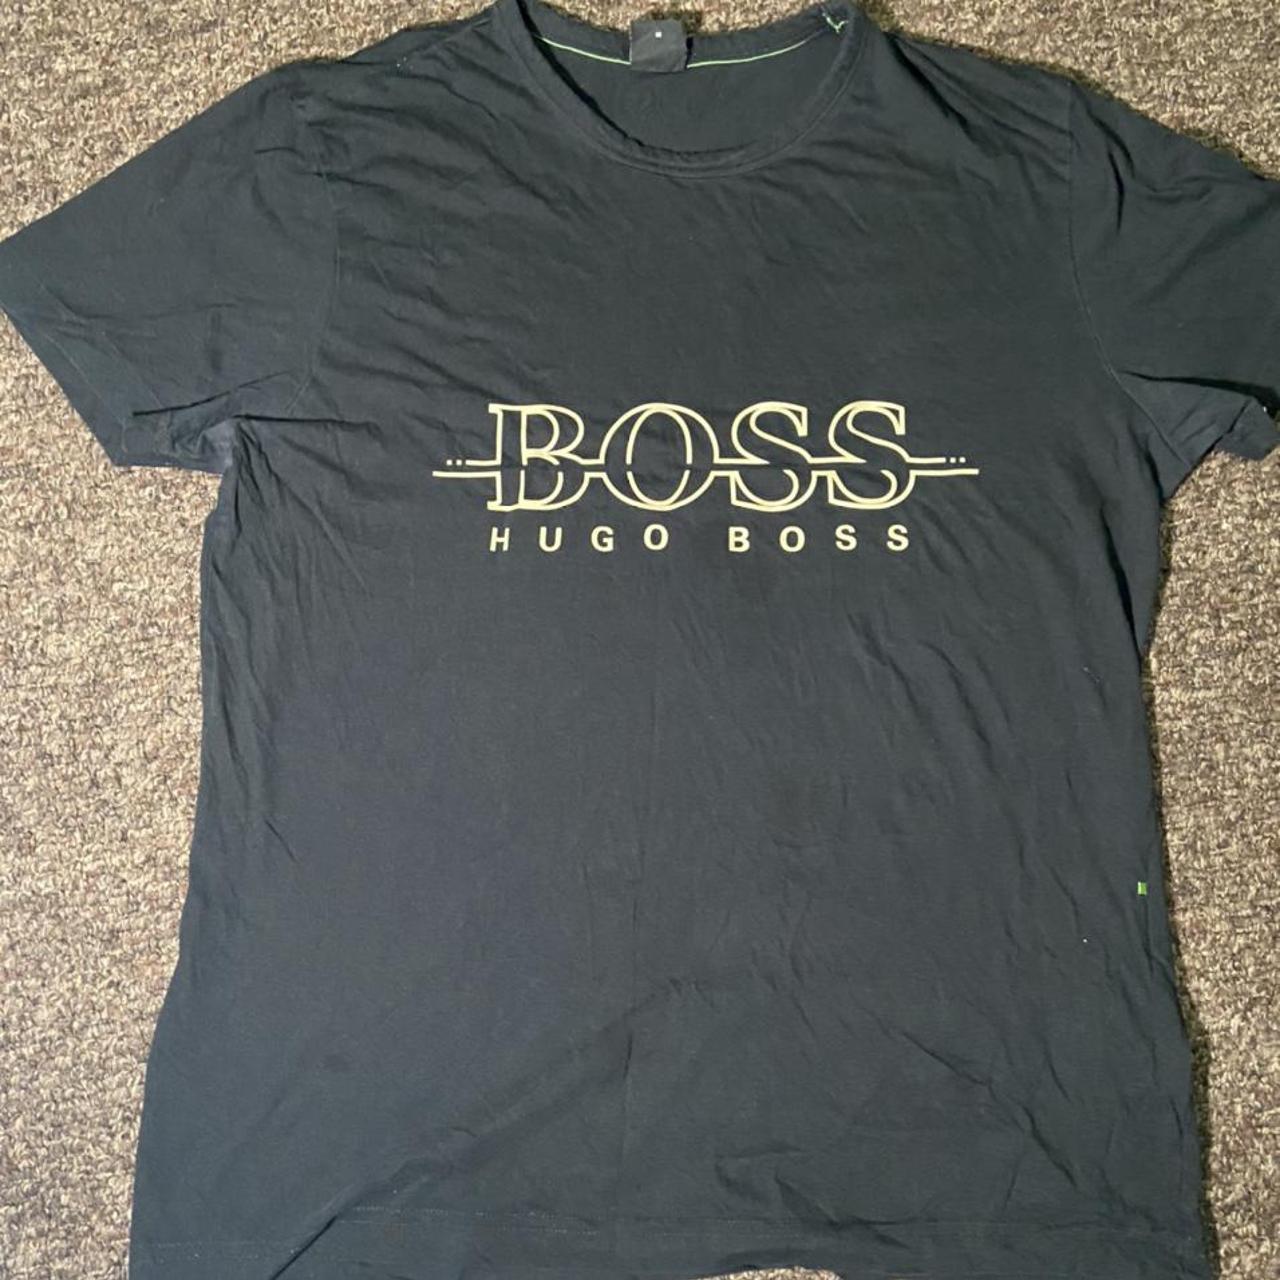 Hugo Boss Men's Black and Gold T-shirt